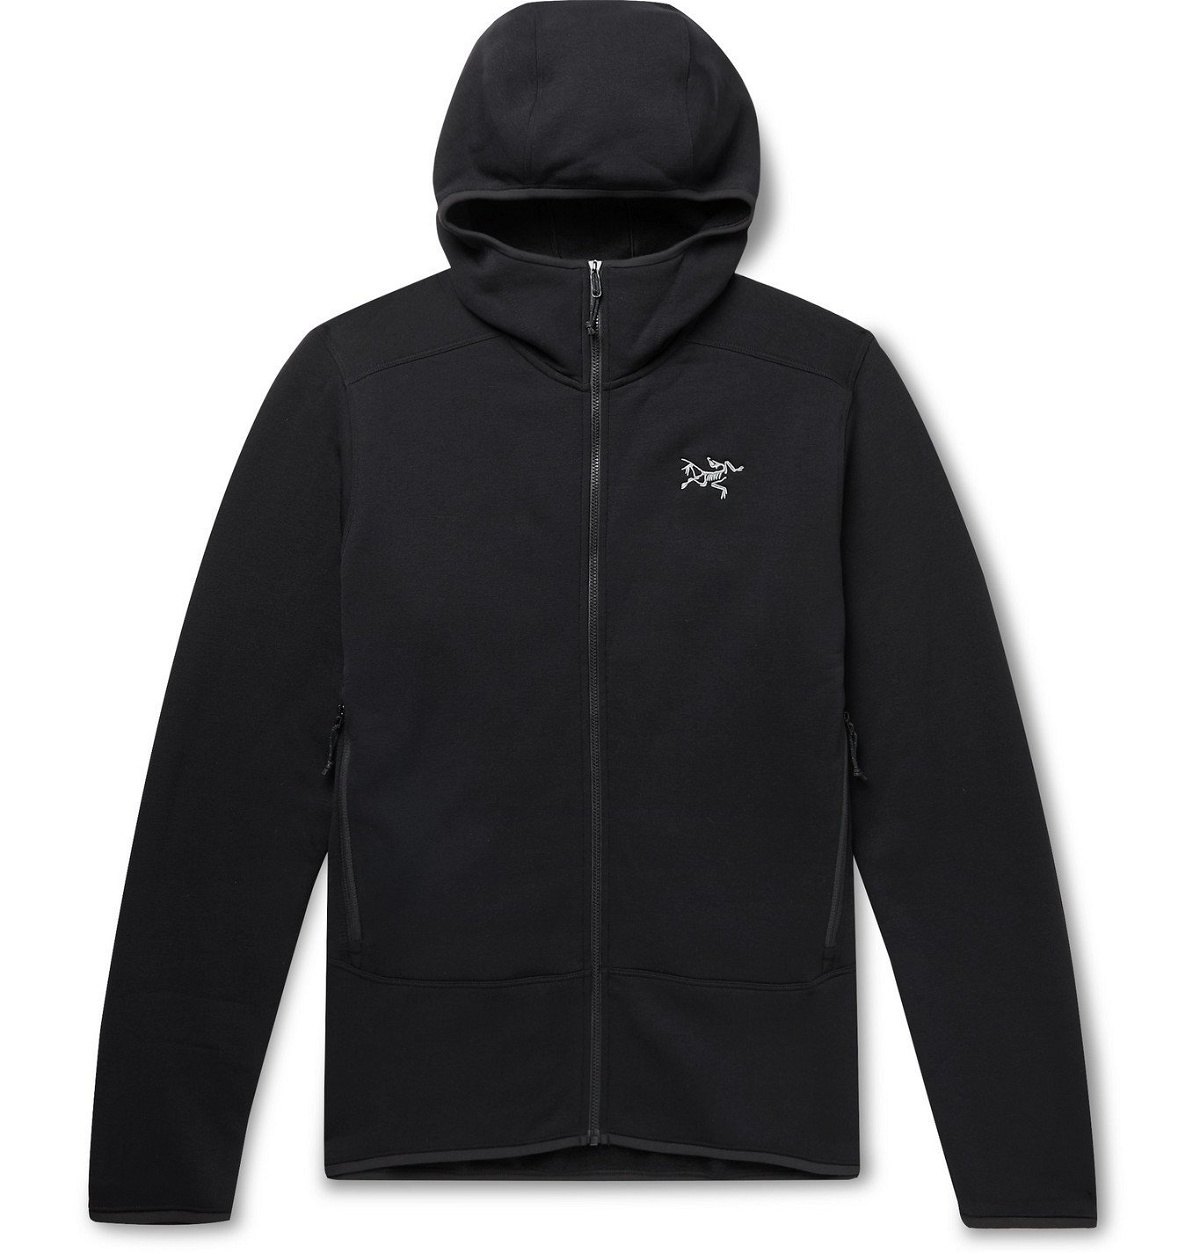 Arc'teryx Kyanite AR Men's Hooded Jacket Black X000005404-Black| Buy ...